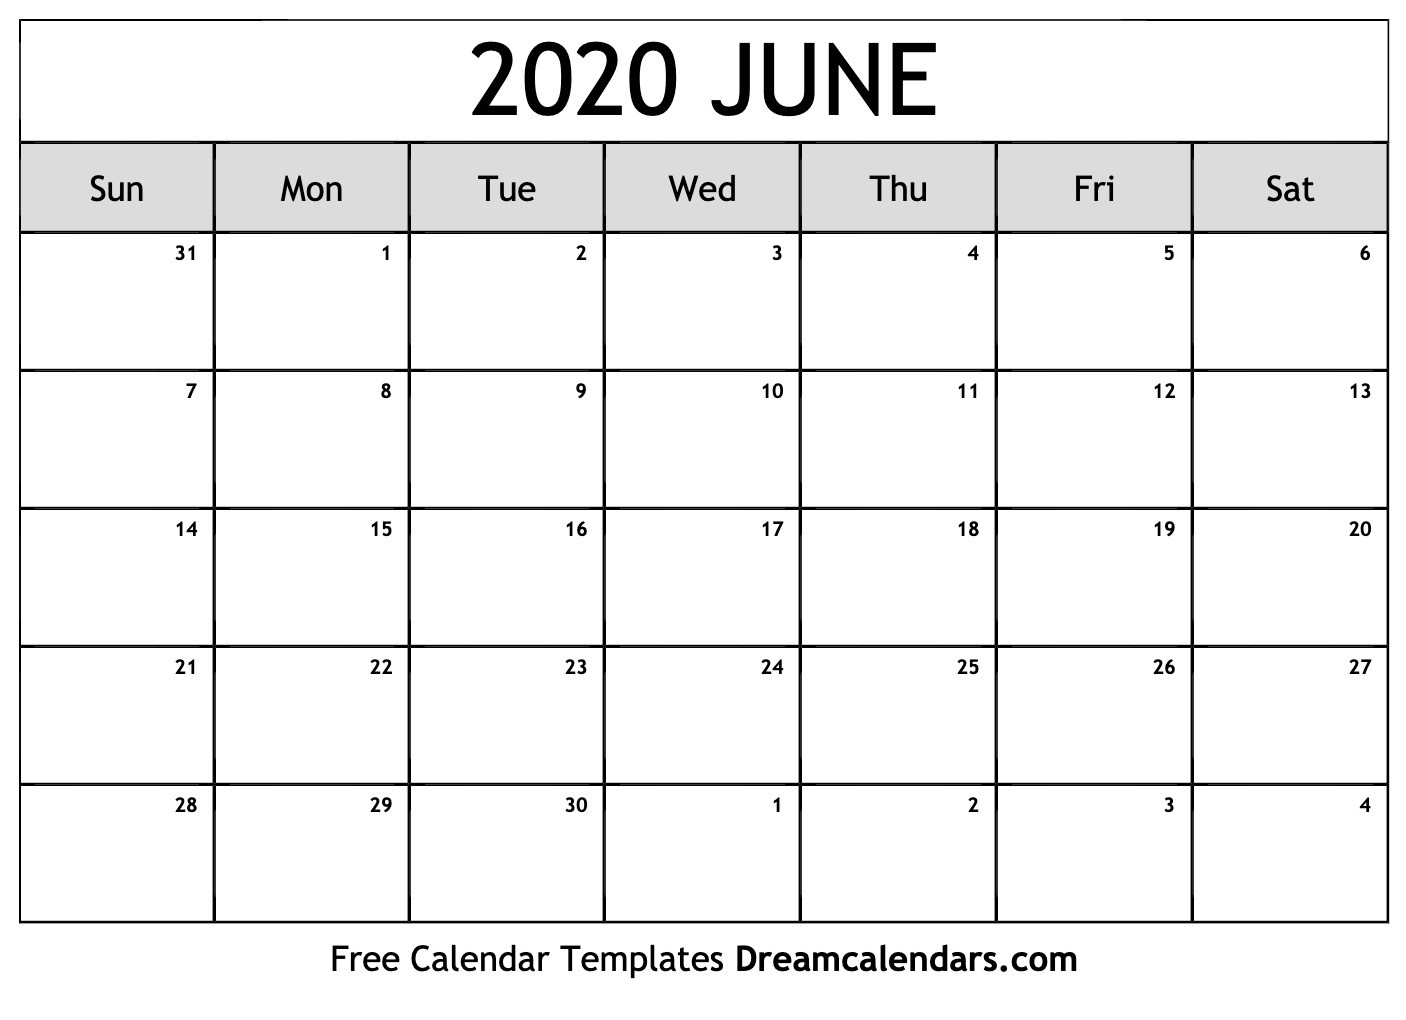 June Monthly Calendar 2020 - Wpa.wpart.co-Monthly June 2020 Calendar